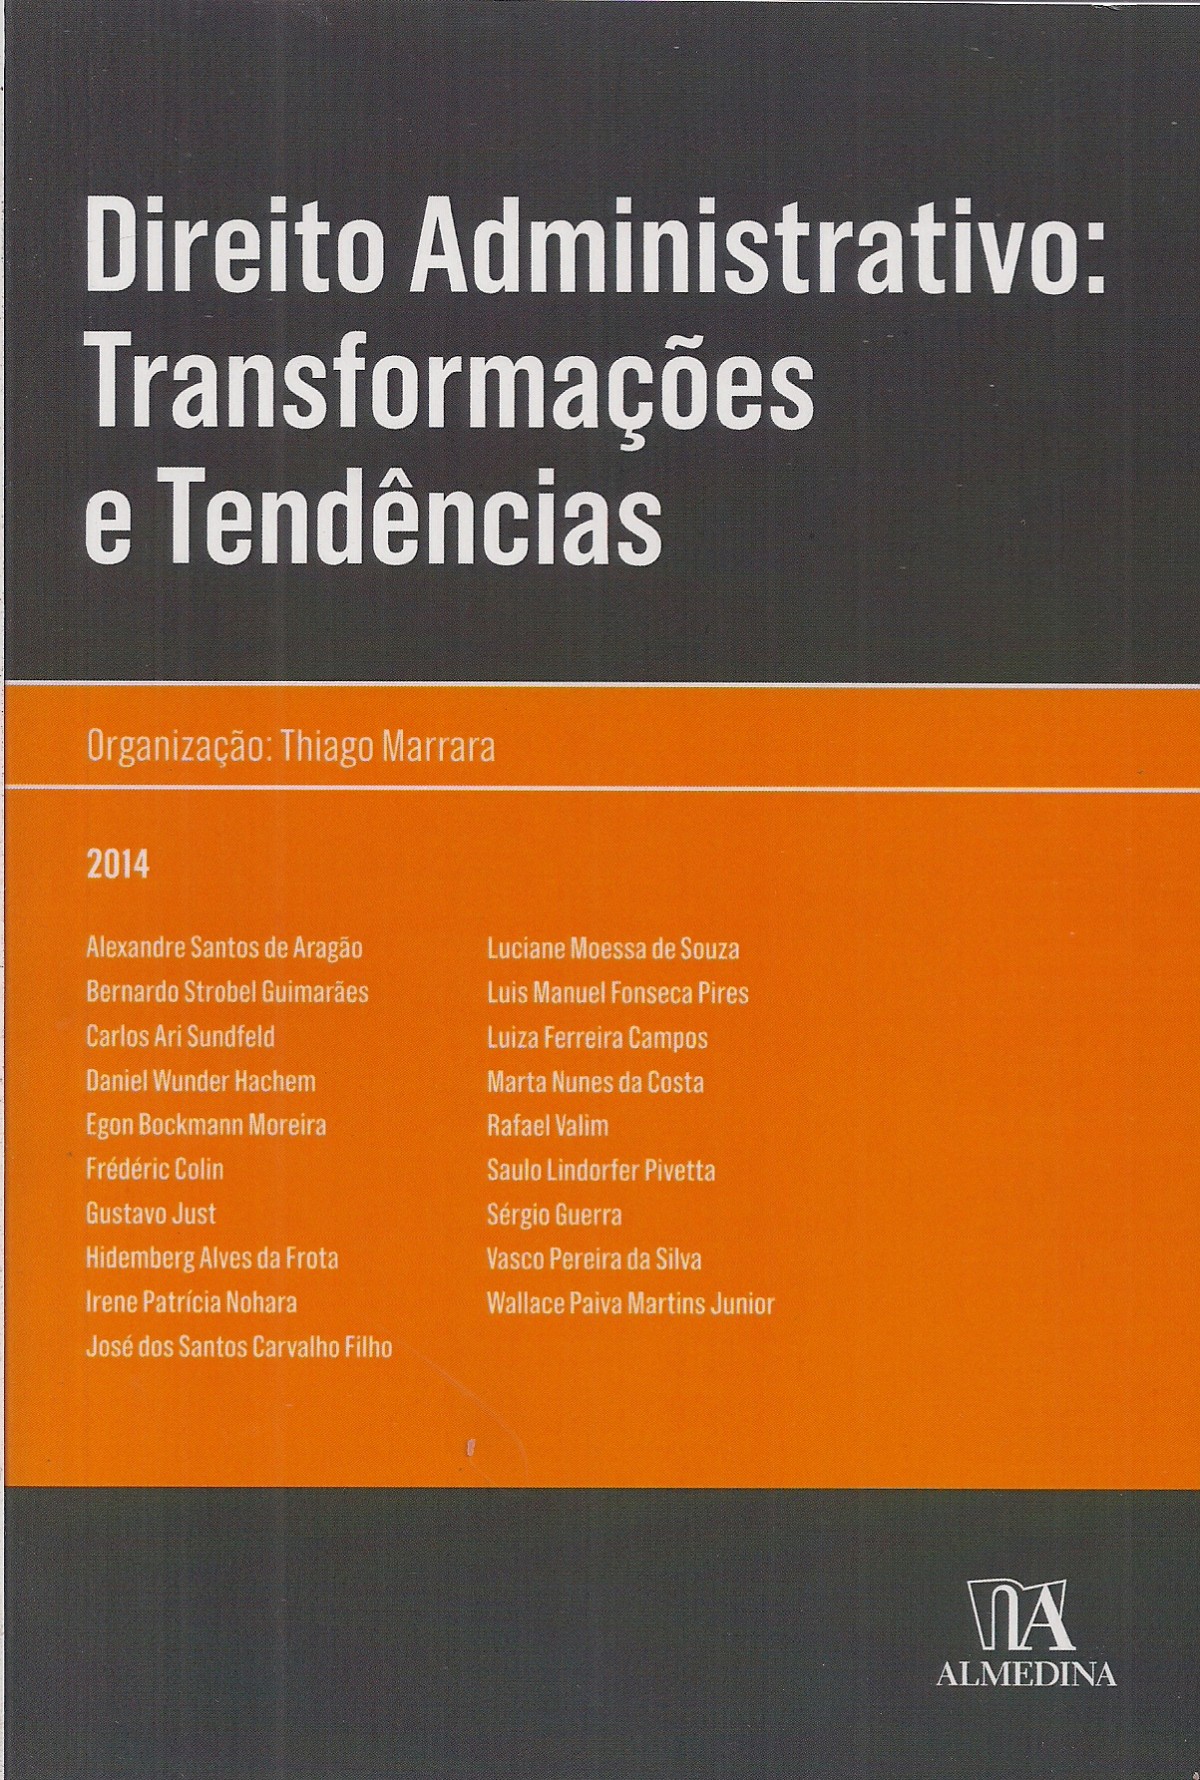 Foto 1 - Direito Administrativo: transformações e tendências